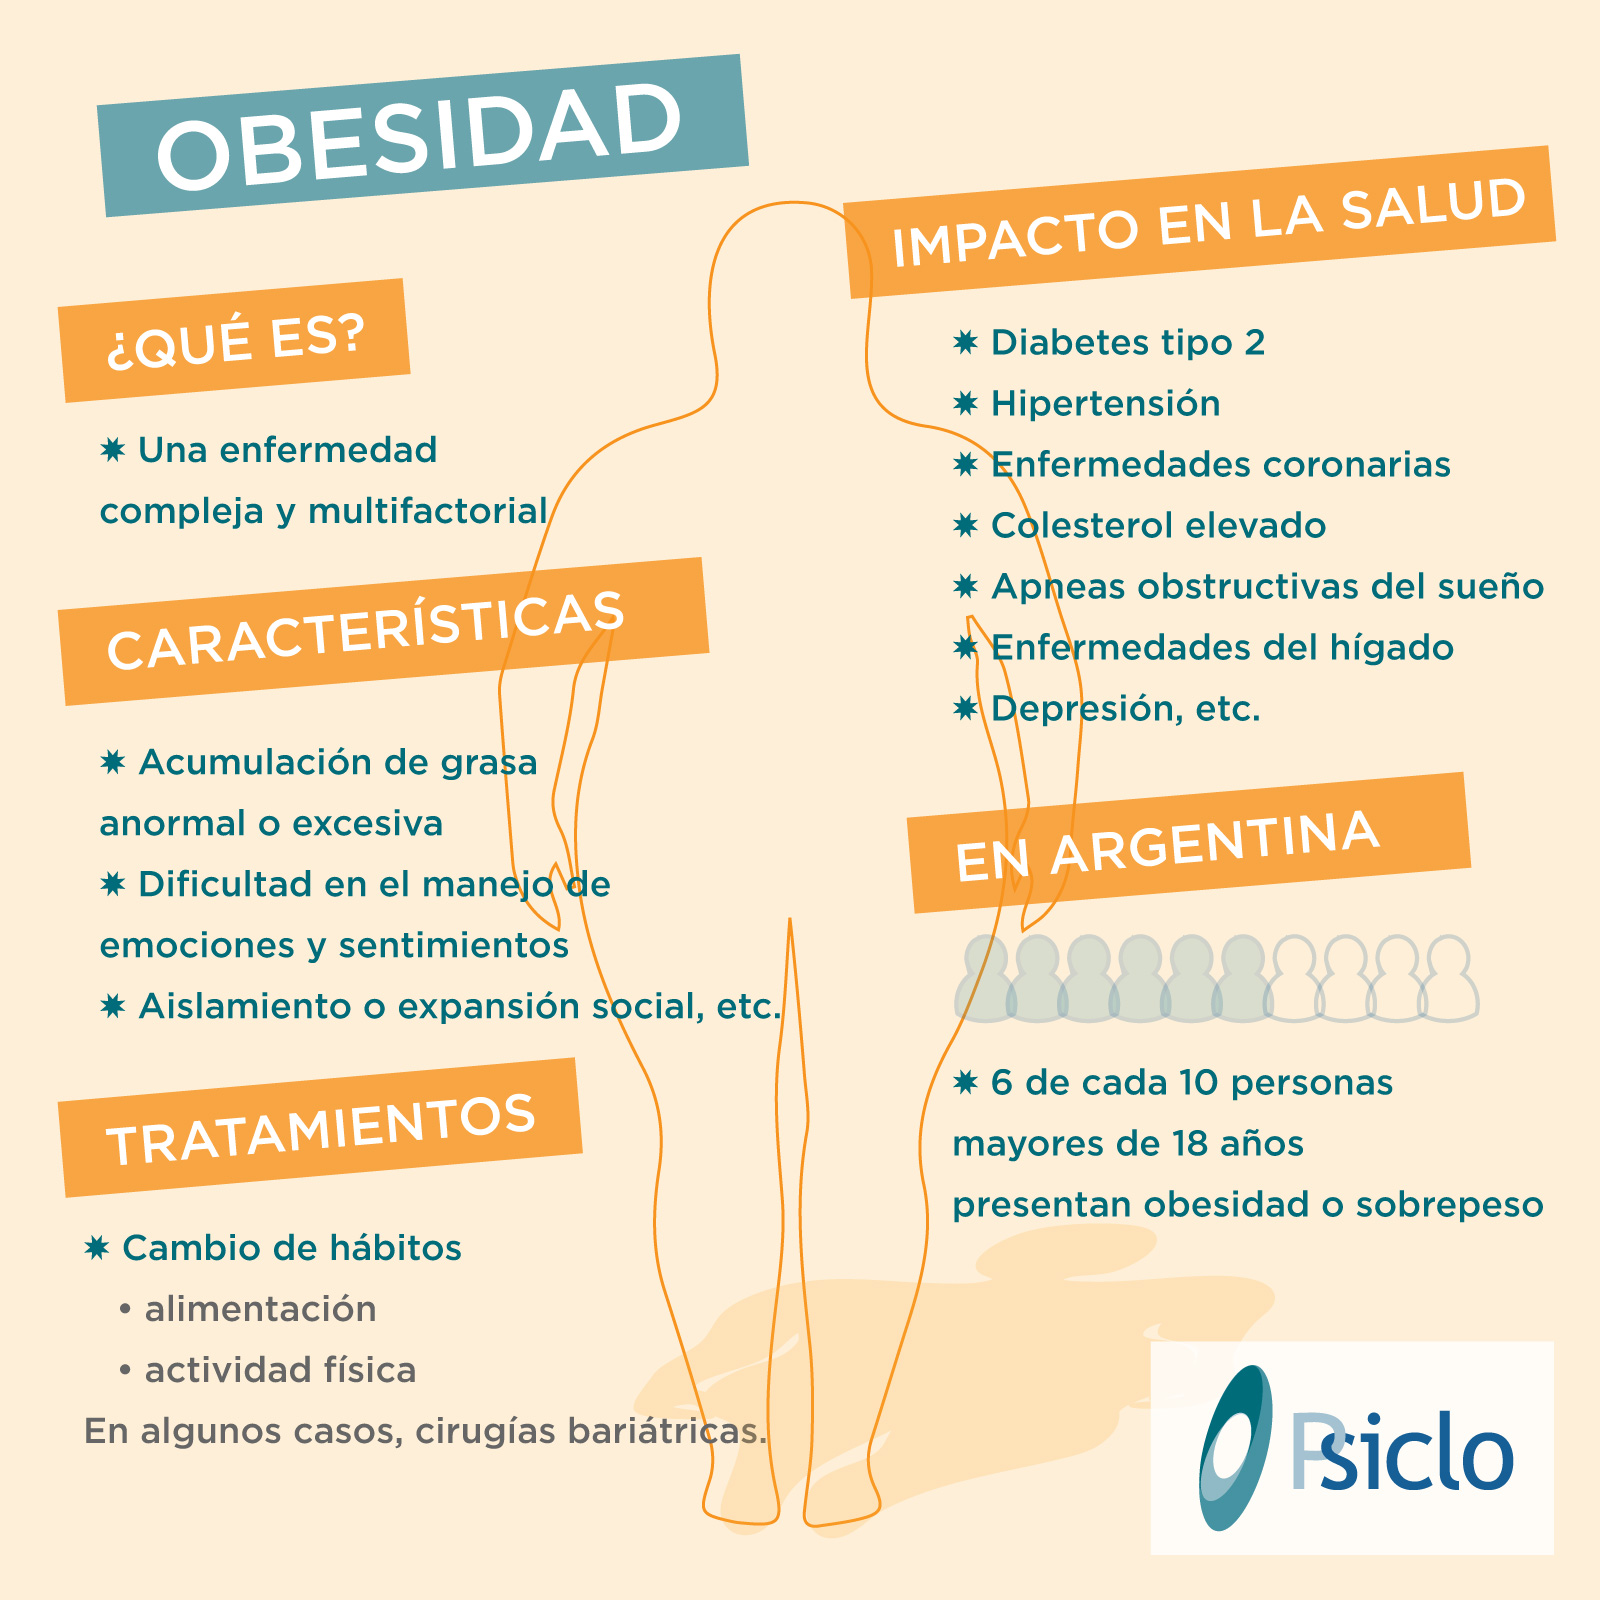 Infograf A De La Obesidad Psiclo